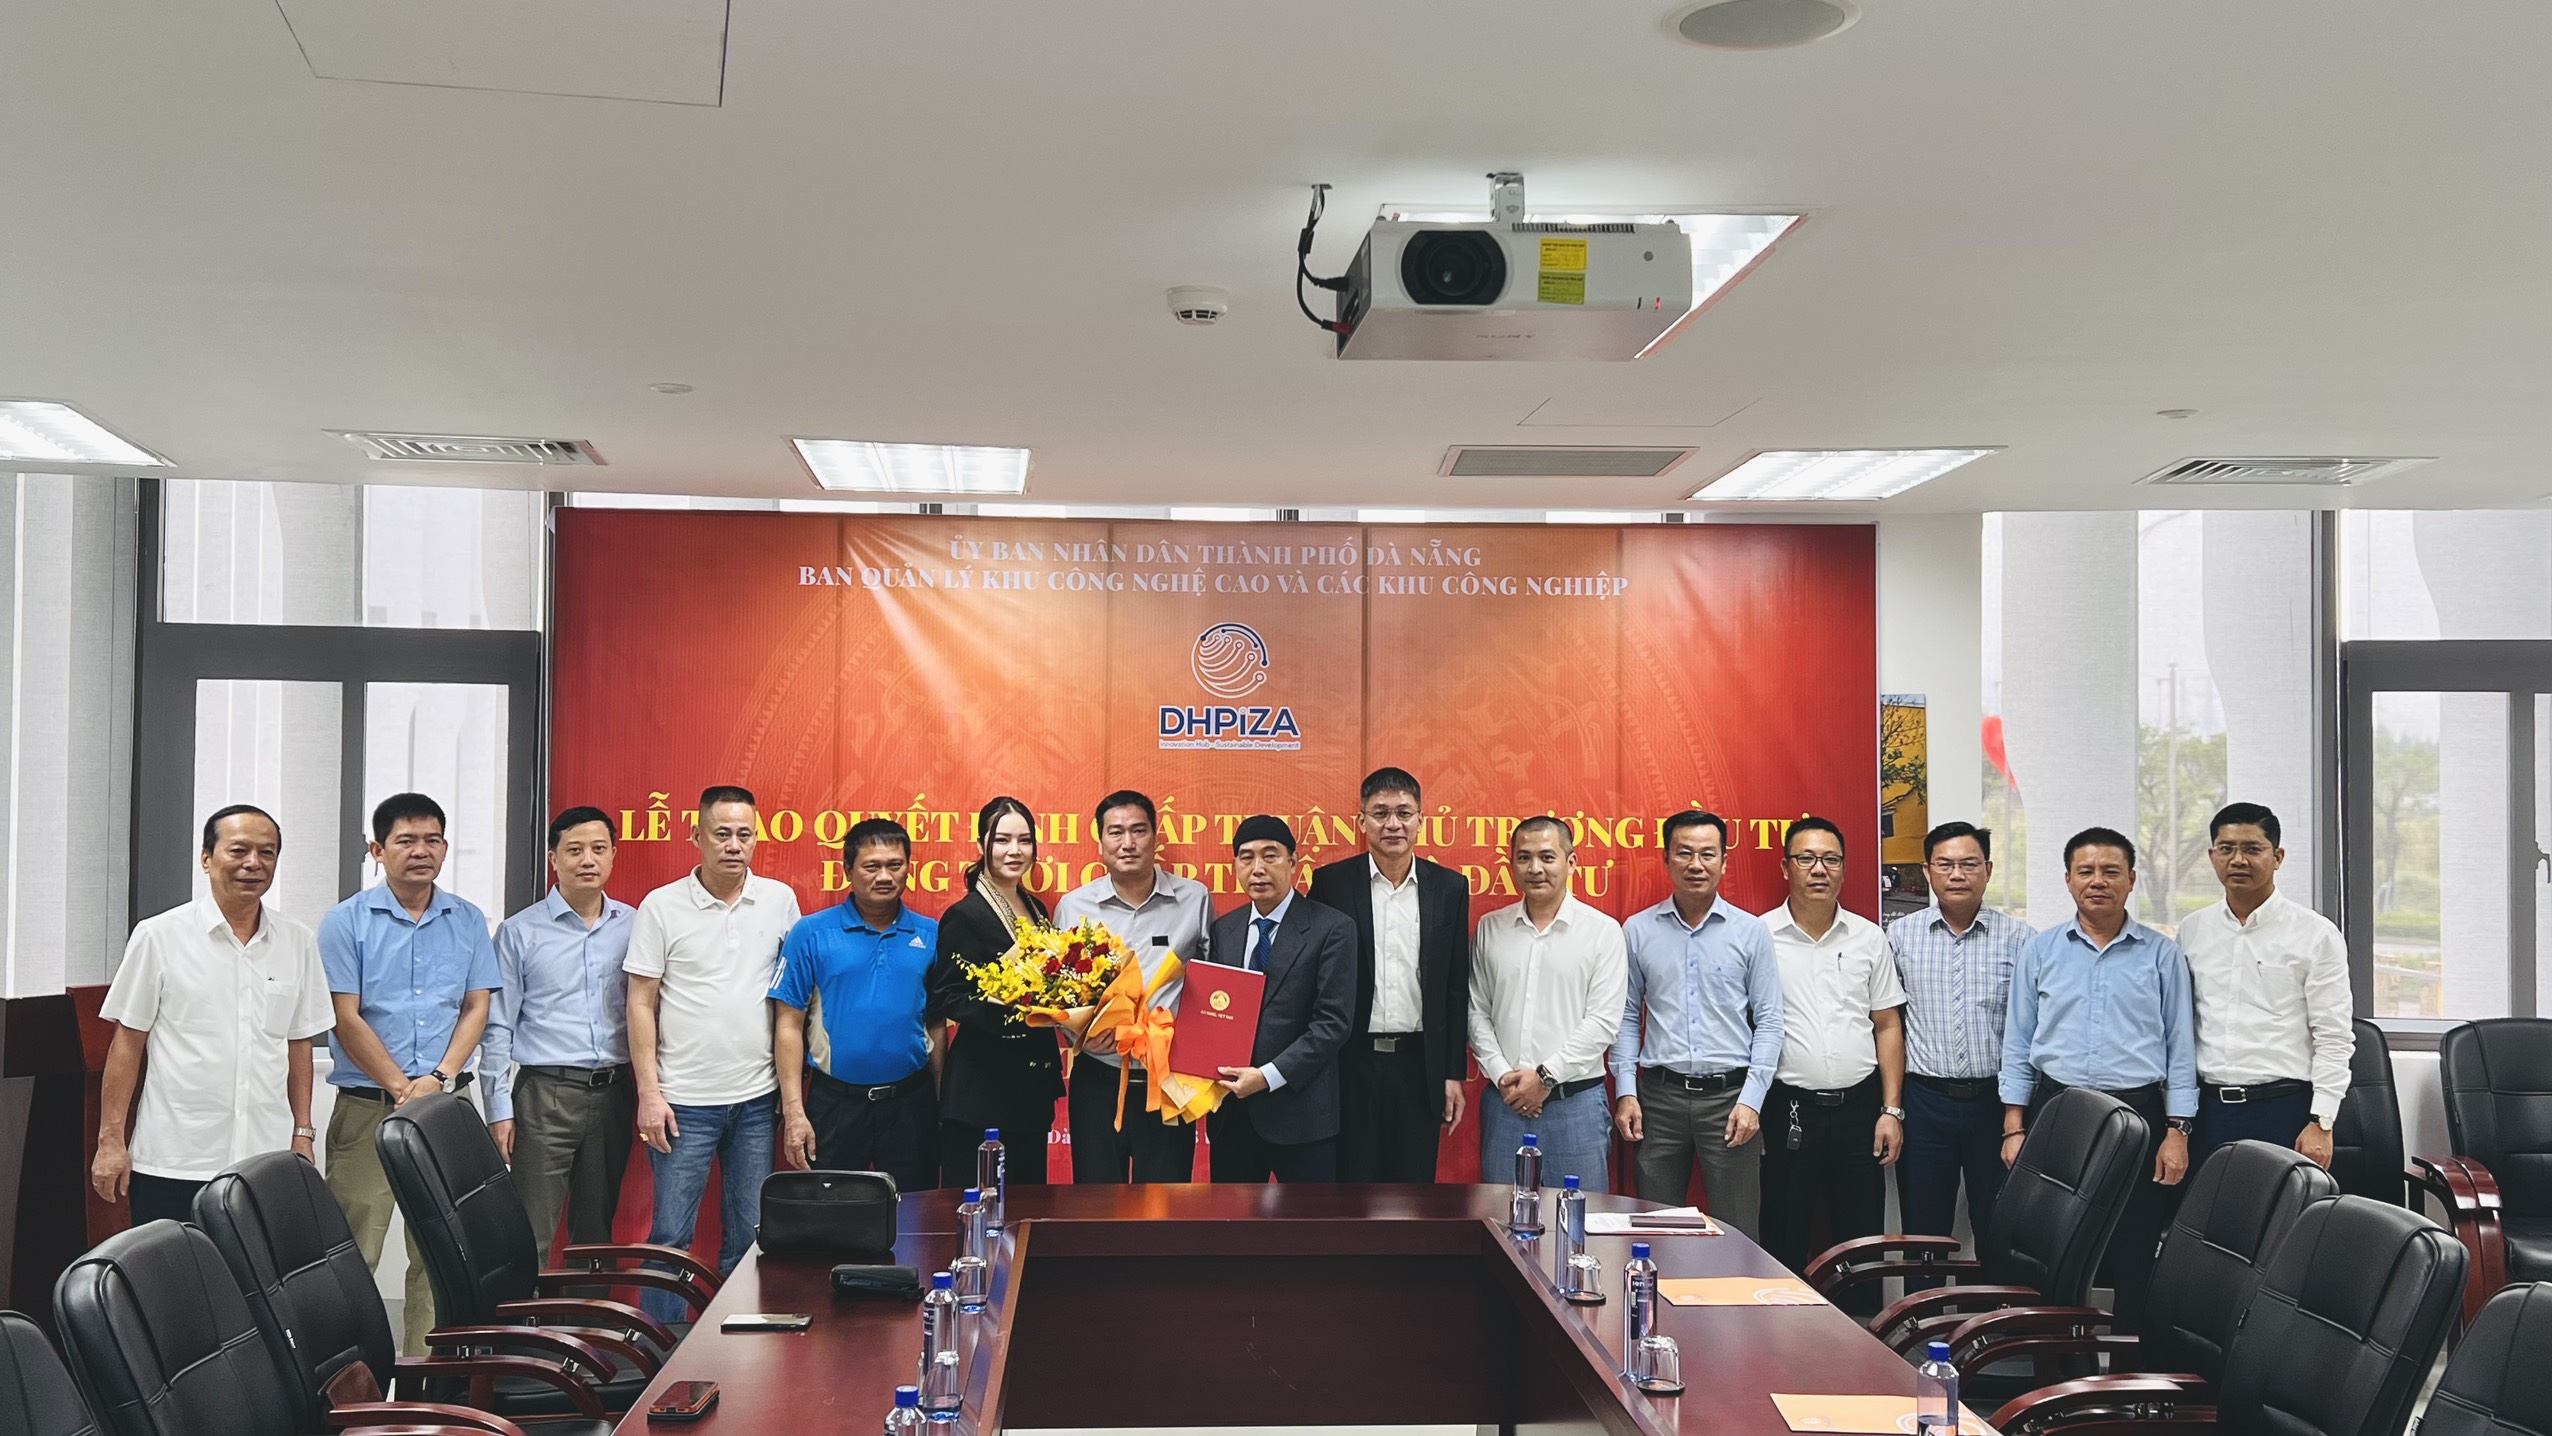 Ban Quản lý Khu công nghệ cao và các khu công nghiệp Đà Nẵng cho biết, đơn vị đã trao Quyết định chấp thuận chủ trương đầu tư đồng thời chấp thuận nhà đầu tư Dự án Trung tâm nghiên cứu và lưu trữ mô - Tế bào gốc Châu Á.